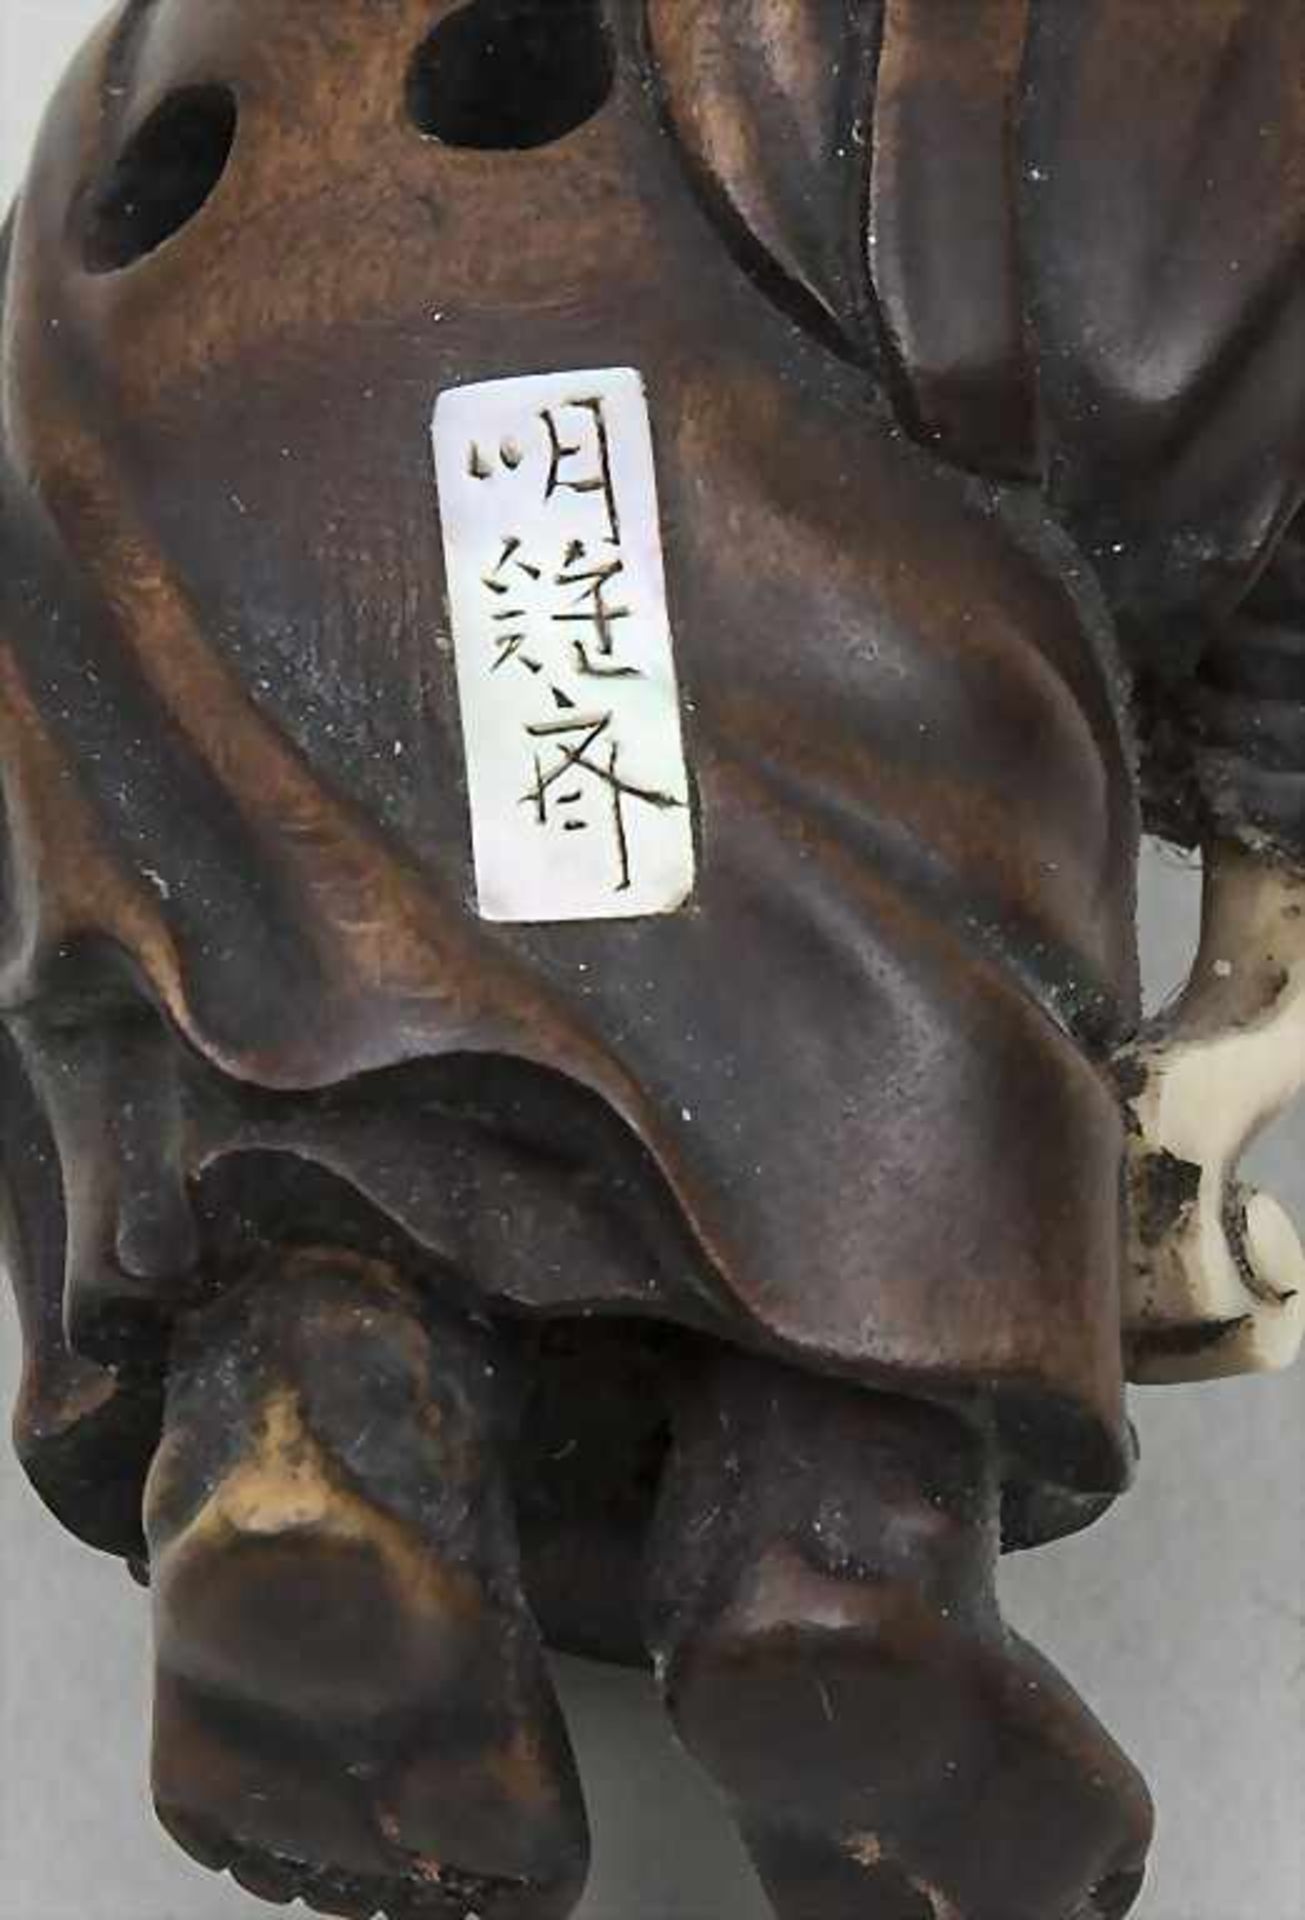 Netsuke, klagender Mönch, Buchsbaum, Japan, 19. Jh.sehr feine Darstellung eines klagenden Mönchs mit - Image 2 of 2